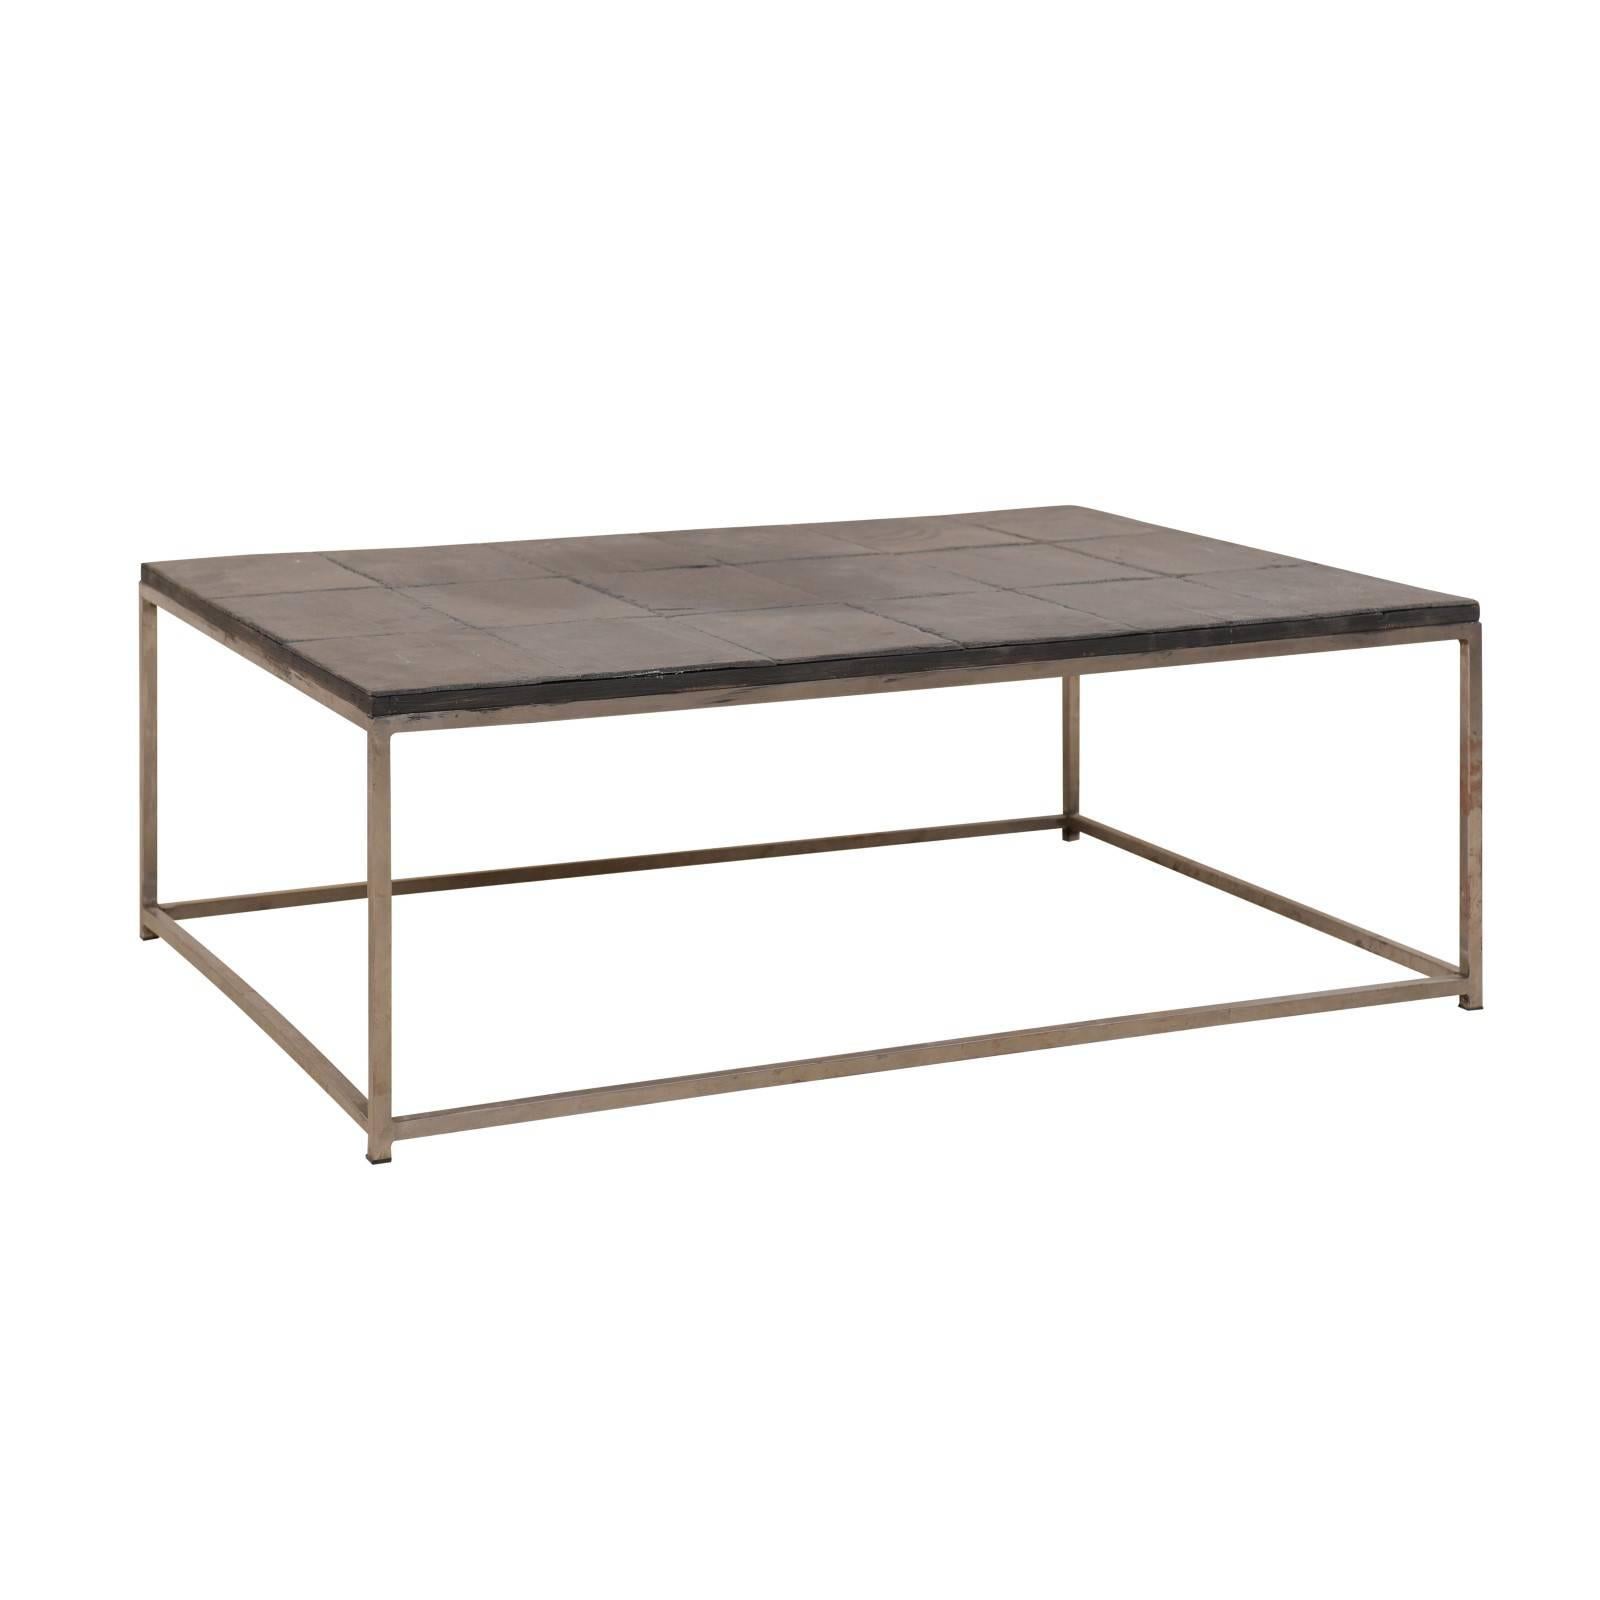 Table basse de style moderne avec plateau carrelé en ardoise et base en métal personnalisée élégante